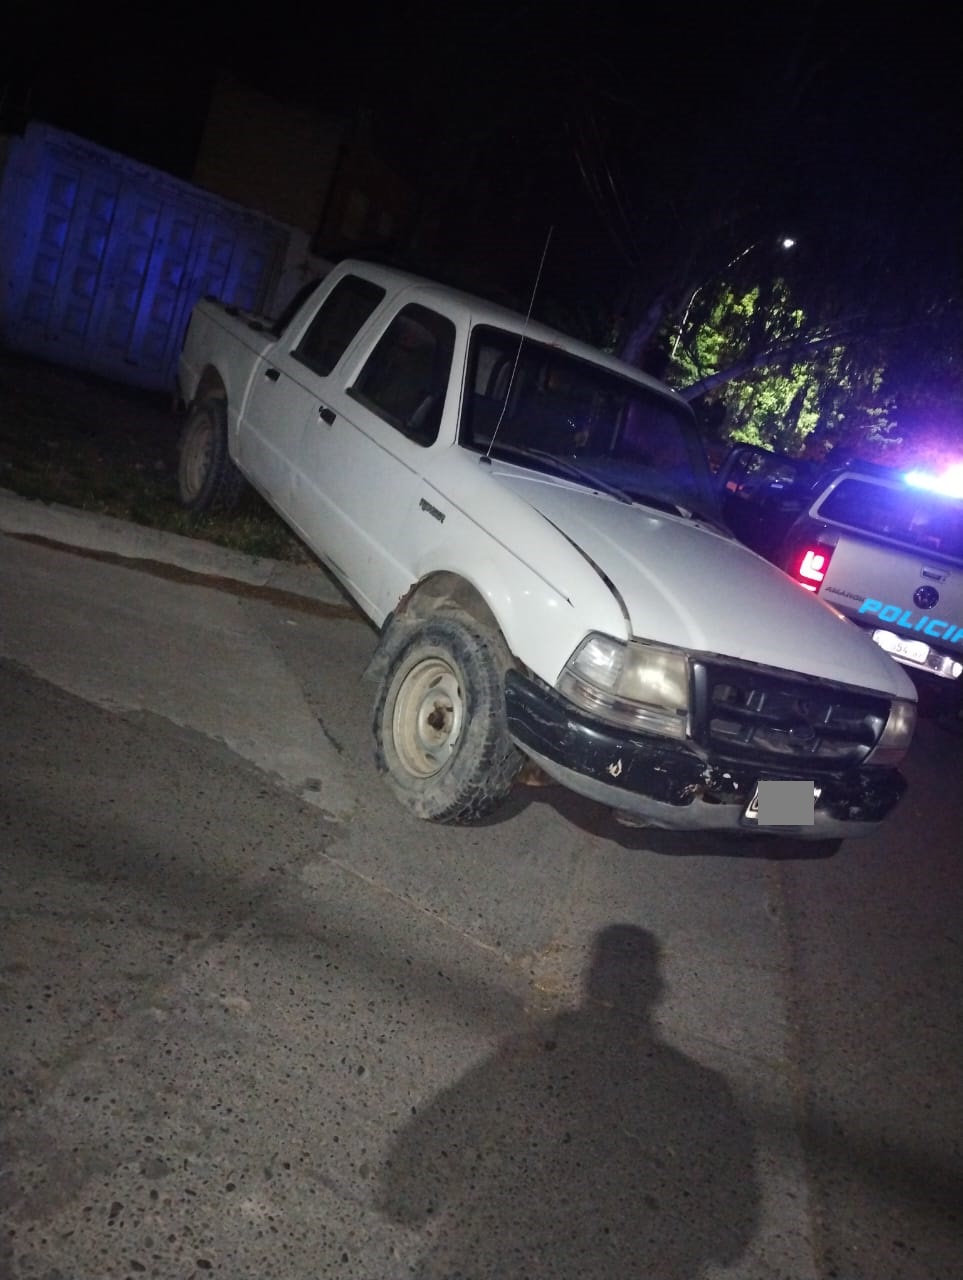 POLICIALES: General Roca: detienen a dos hombres tras robar la rueda de un vehículo